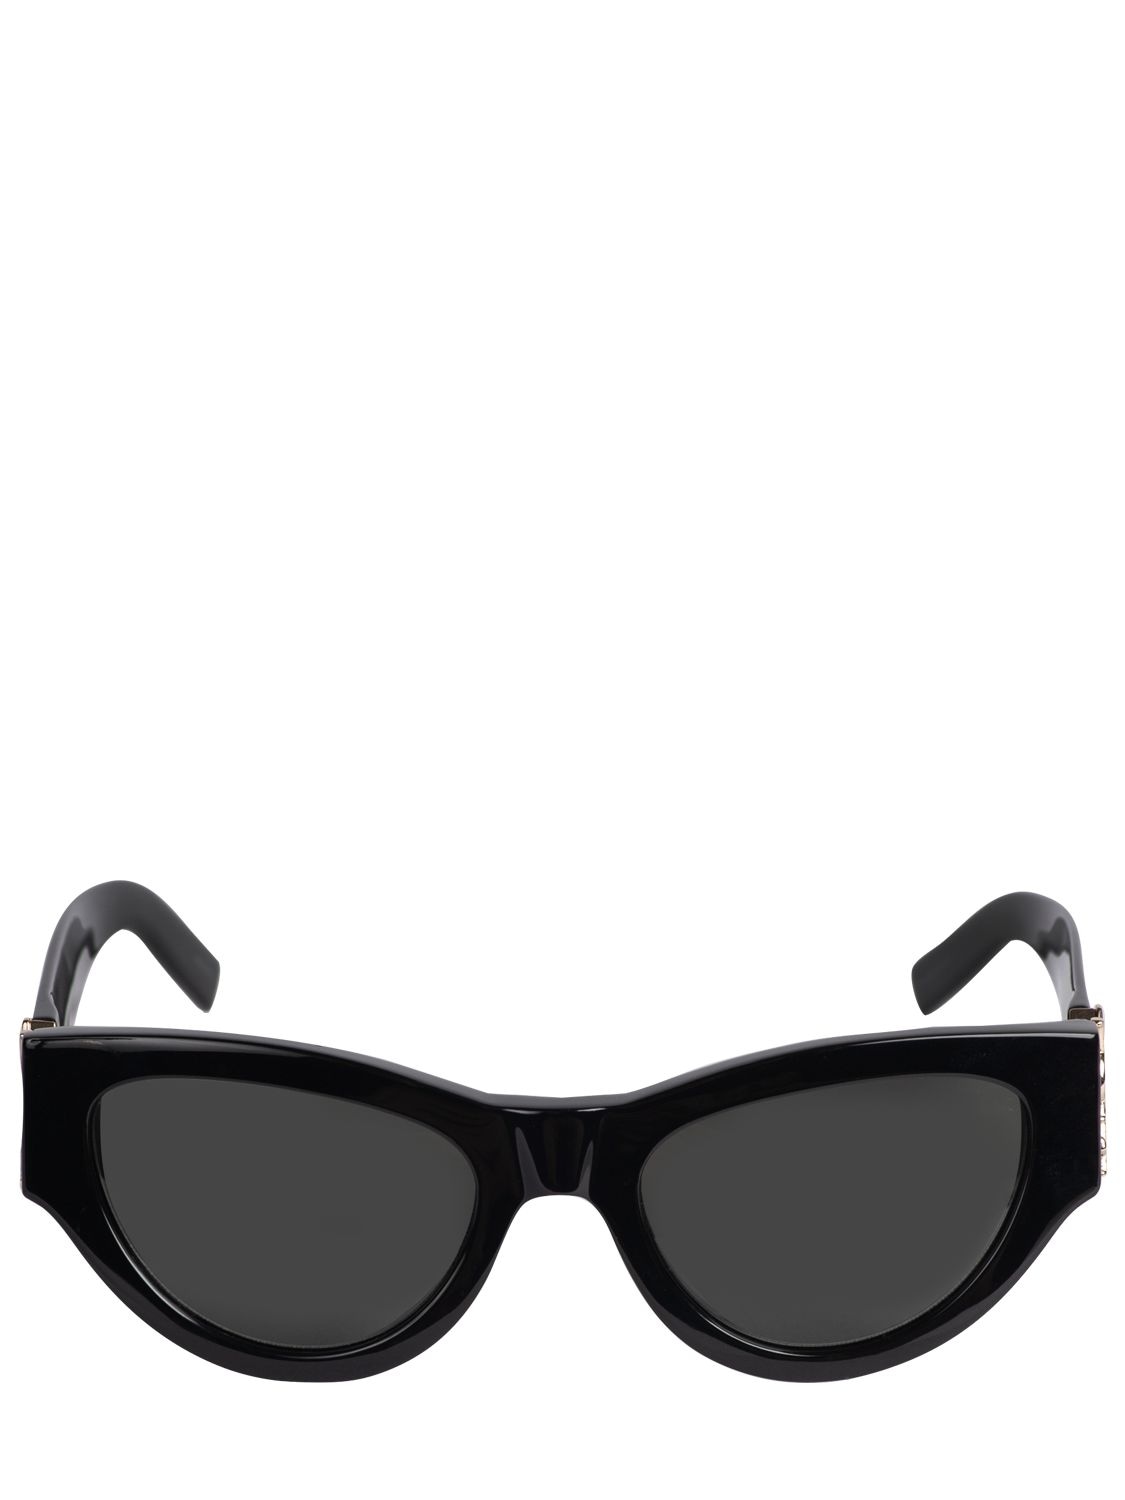 Image of Sl M94 Round Acetate Sunglasses